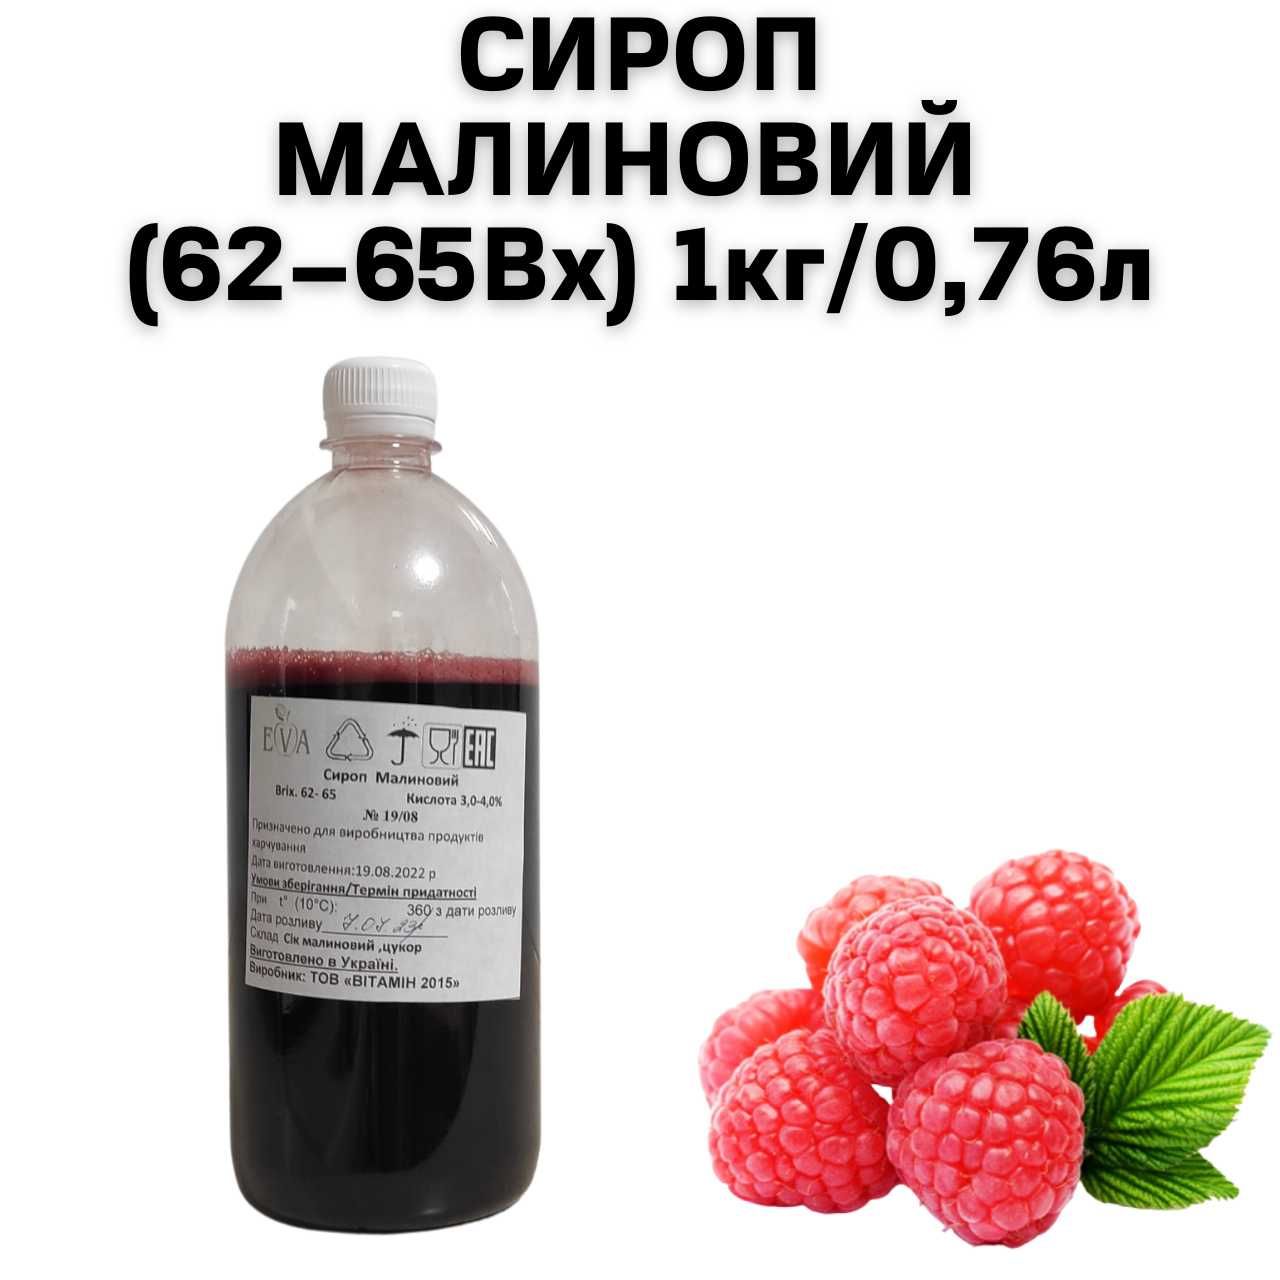 Сироп Малиновый (62–65Вх) бутылка 1 кг / 0.76 л